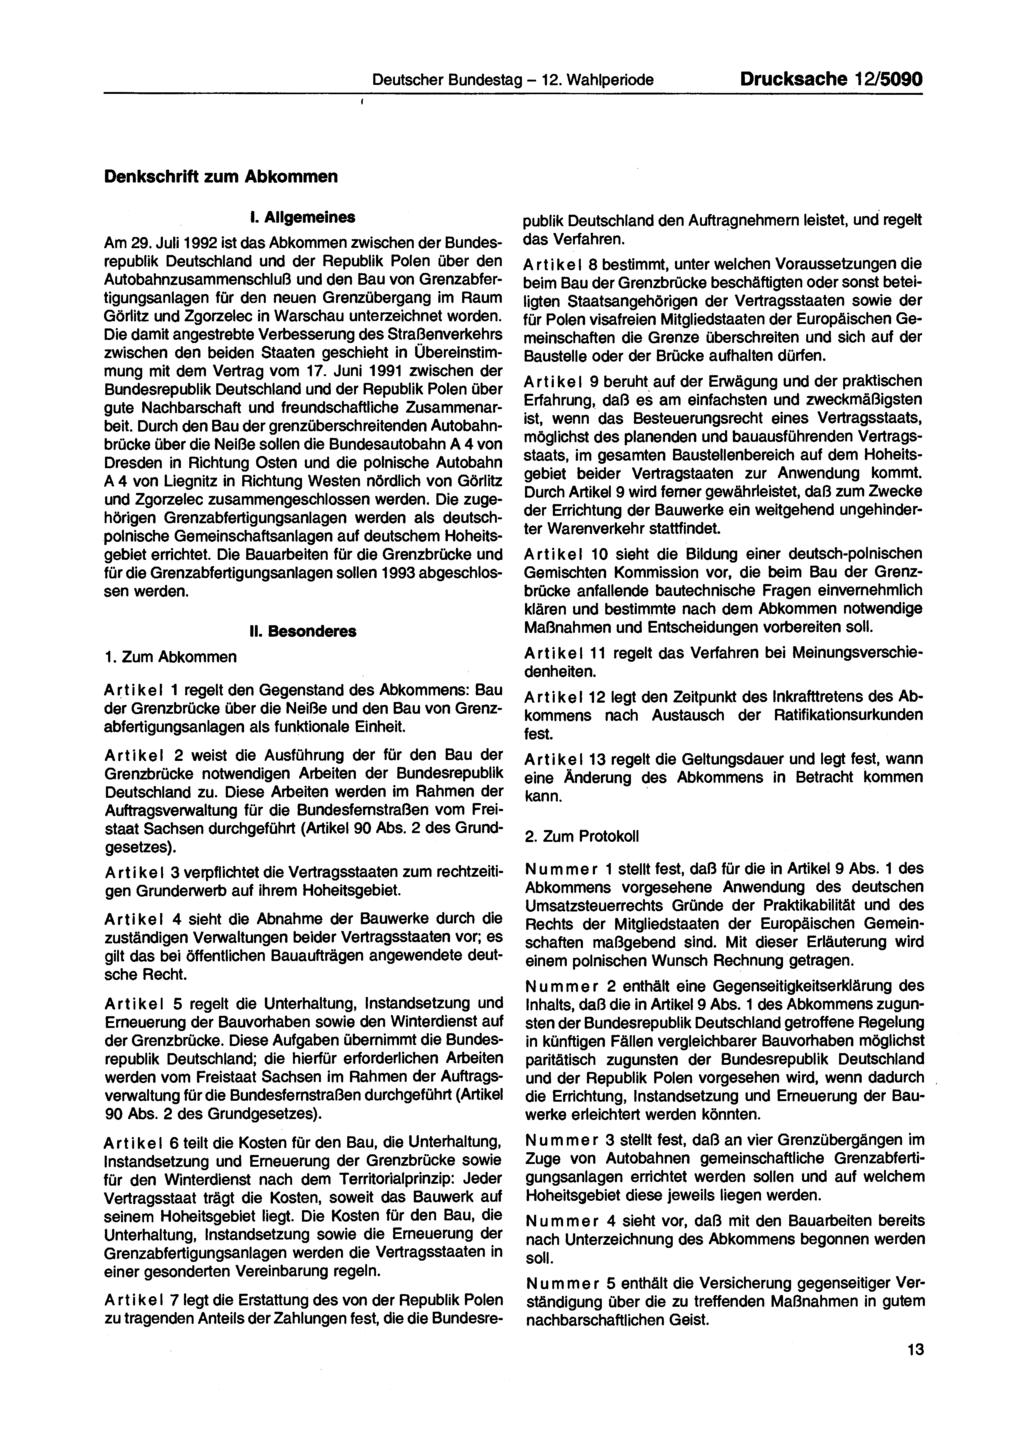 Deutscher Bundestag 12. Wahlperiode Drucksache 12/5090 Denkschrift zum Abkommen I. Allgemeines Am 29.